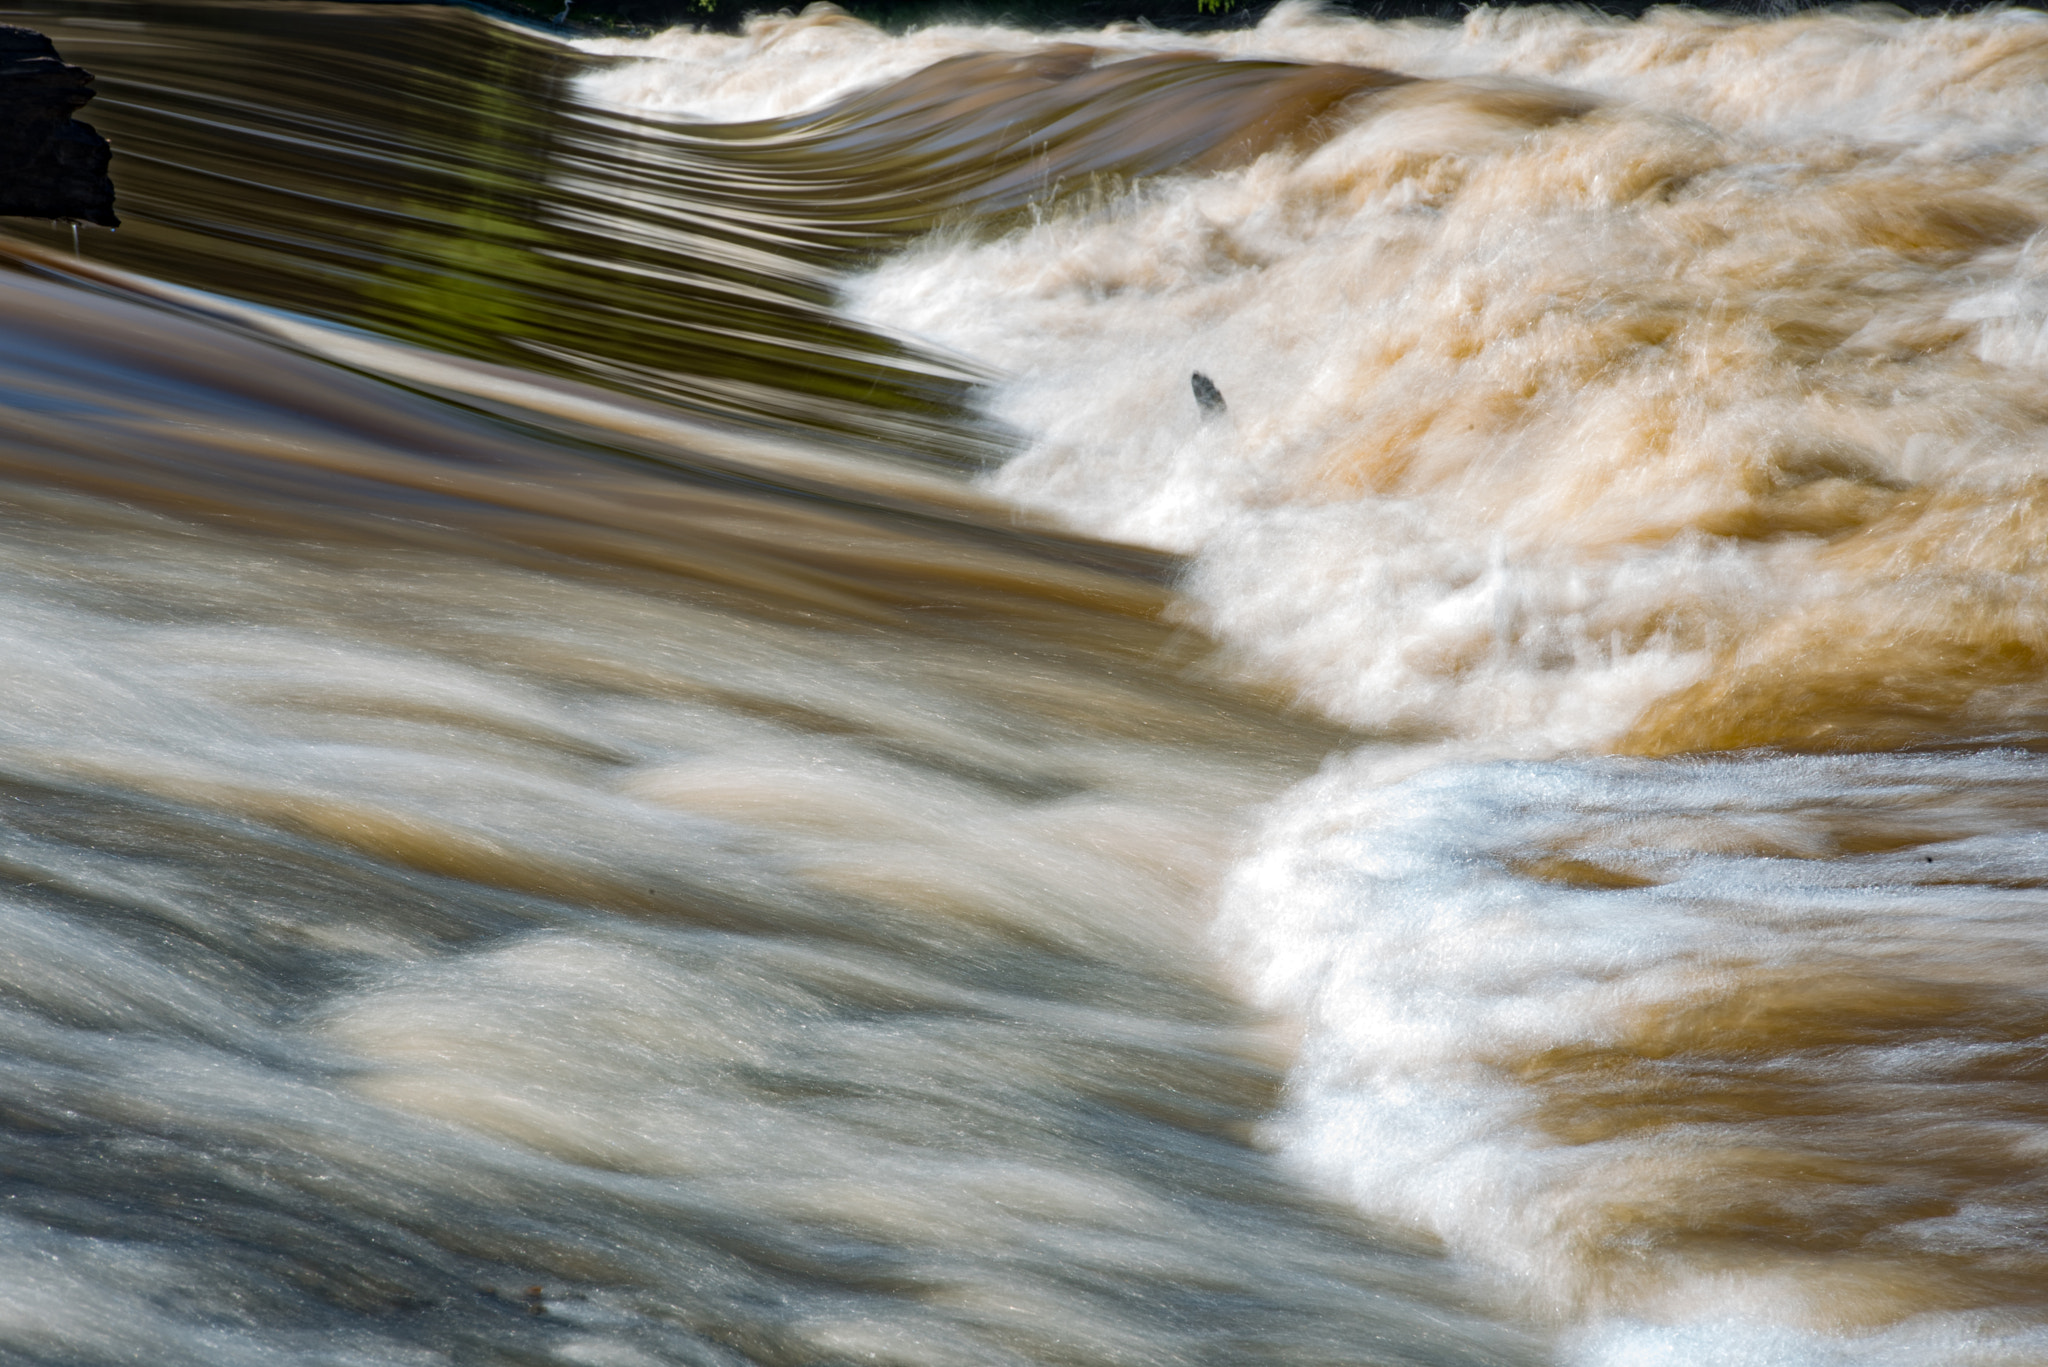 AF Zoom-Nikkor 35-105mm f/3.5-4.5D sample photo. Missouri river in flood photography